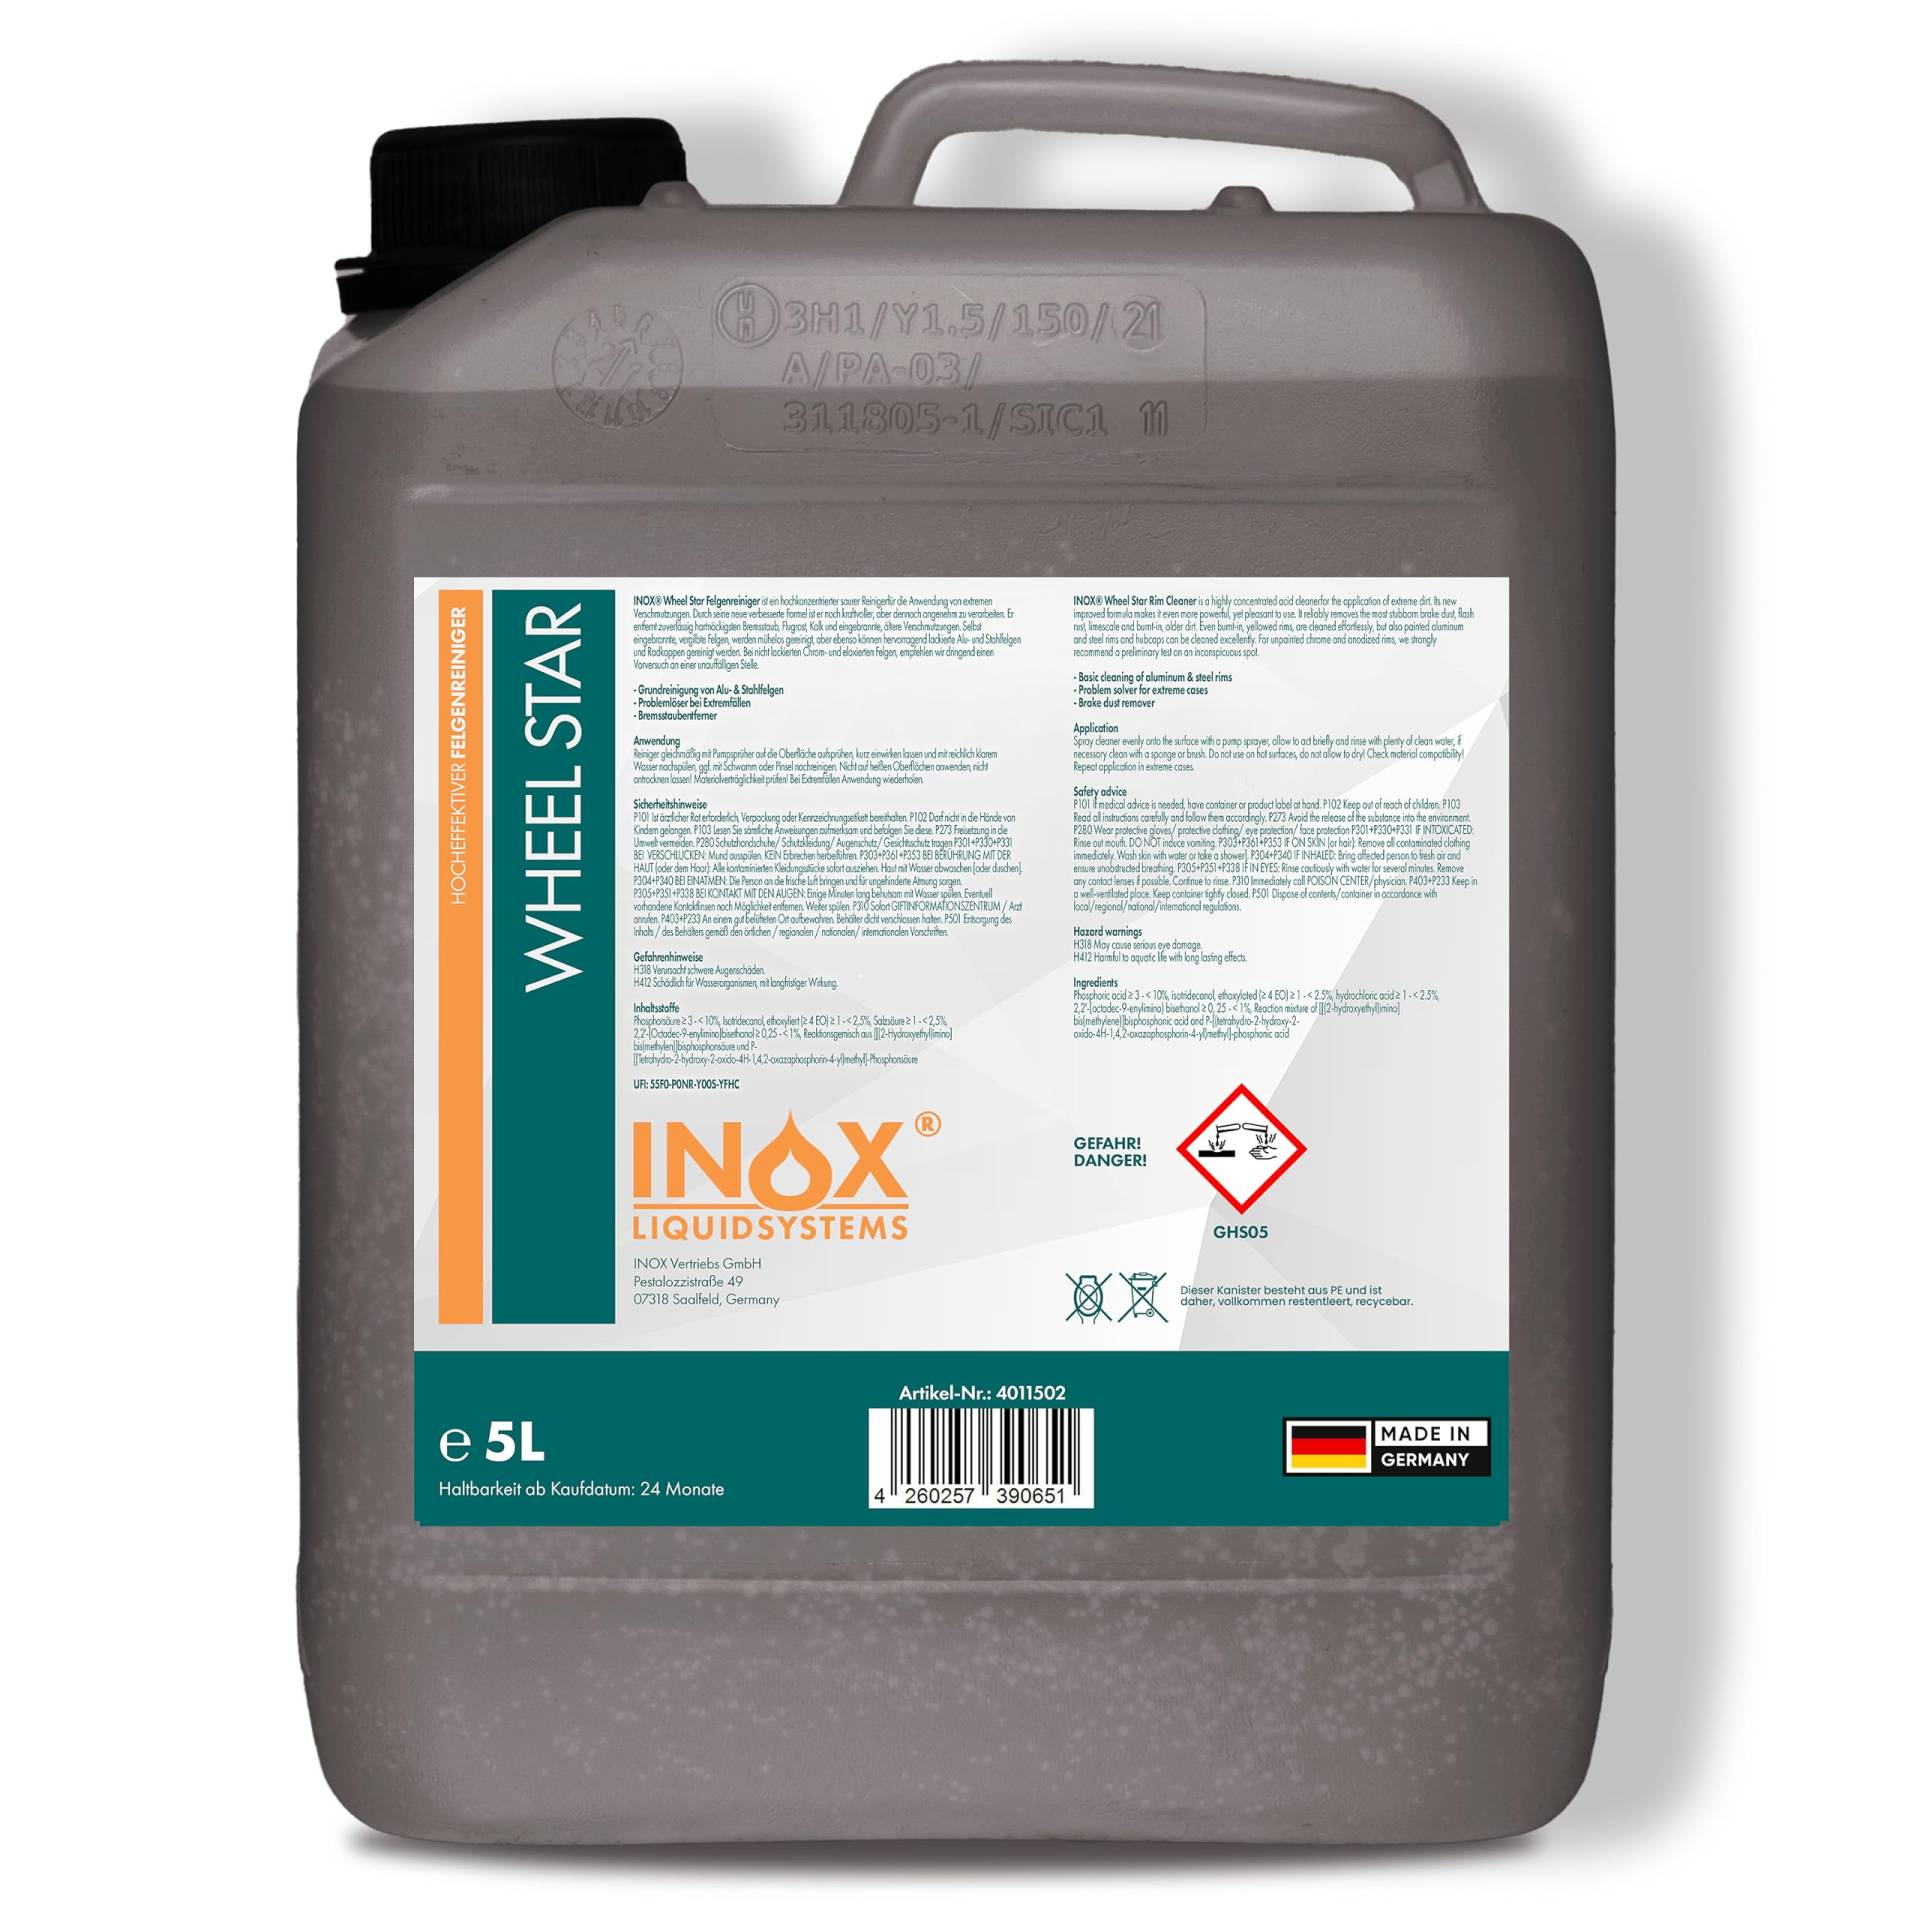 INOX® Felgenreiniger 5L - Hocheffektiver Reiniger für lackierte Stahl-, Chrom- & Alufelgen - Entfernt schnell & zuverlässig hartnäckigen Schmutz & Rost - Ideale Felgenpflege in Profiqualität von INOX-LIQUIDSYSTEMS